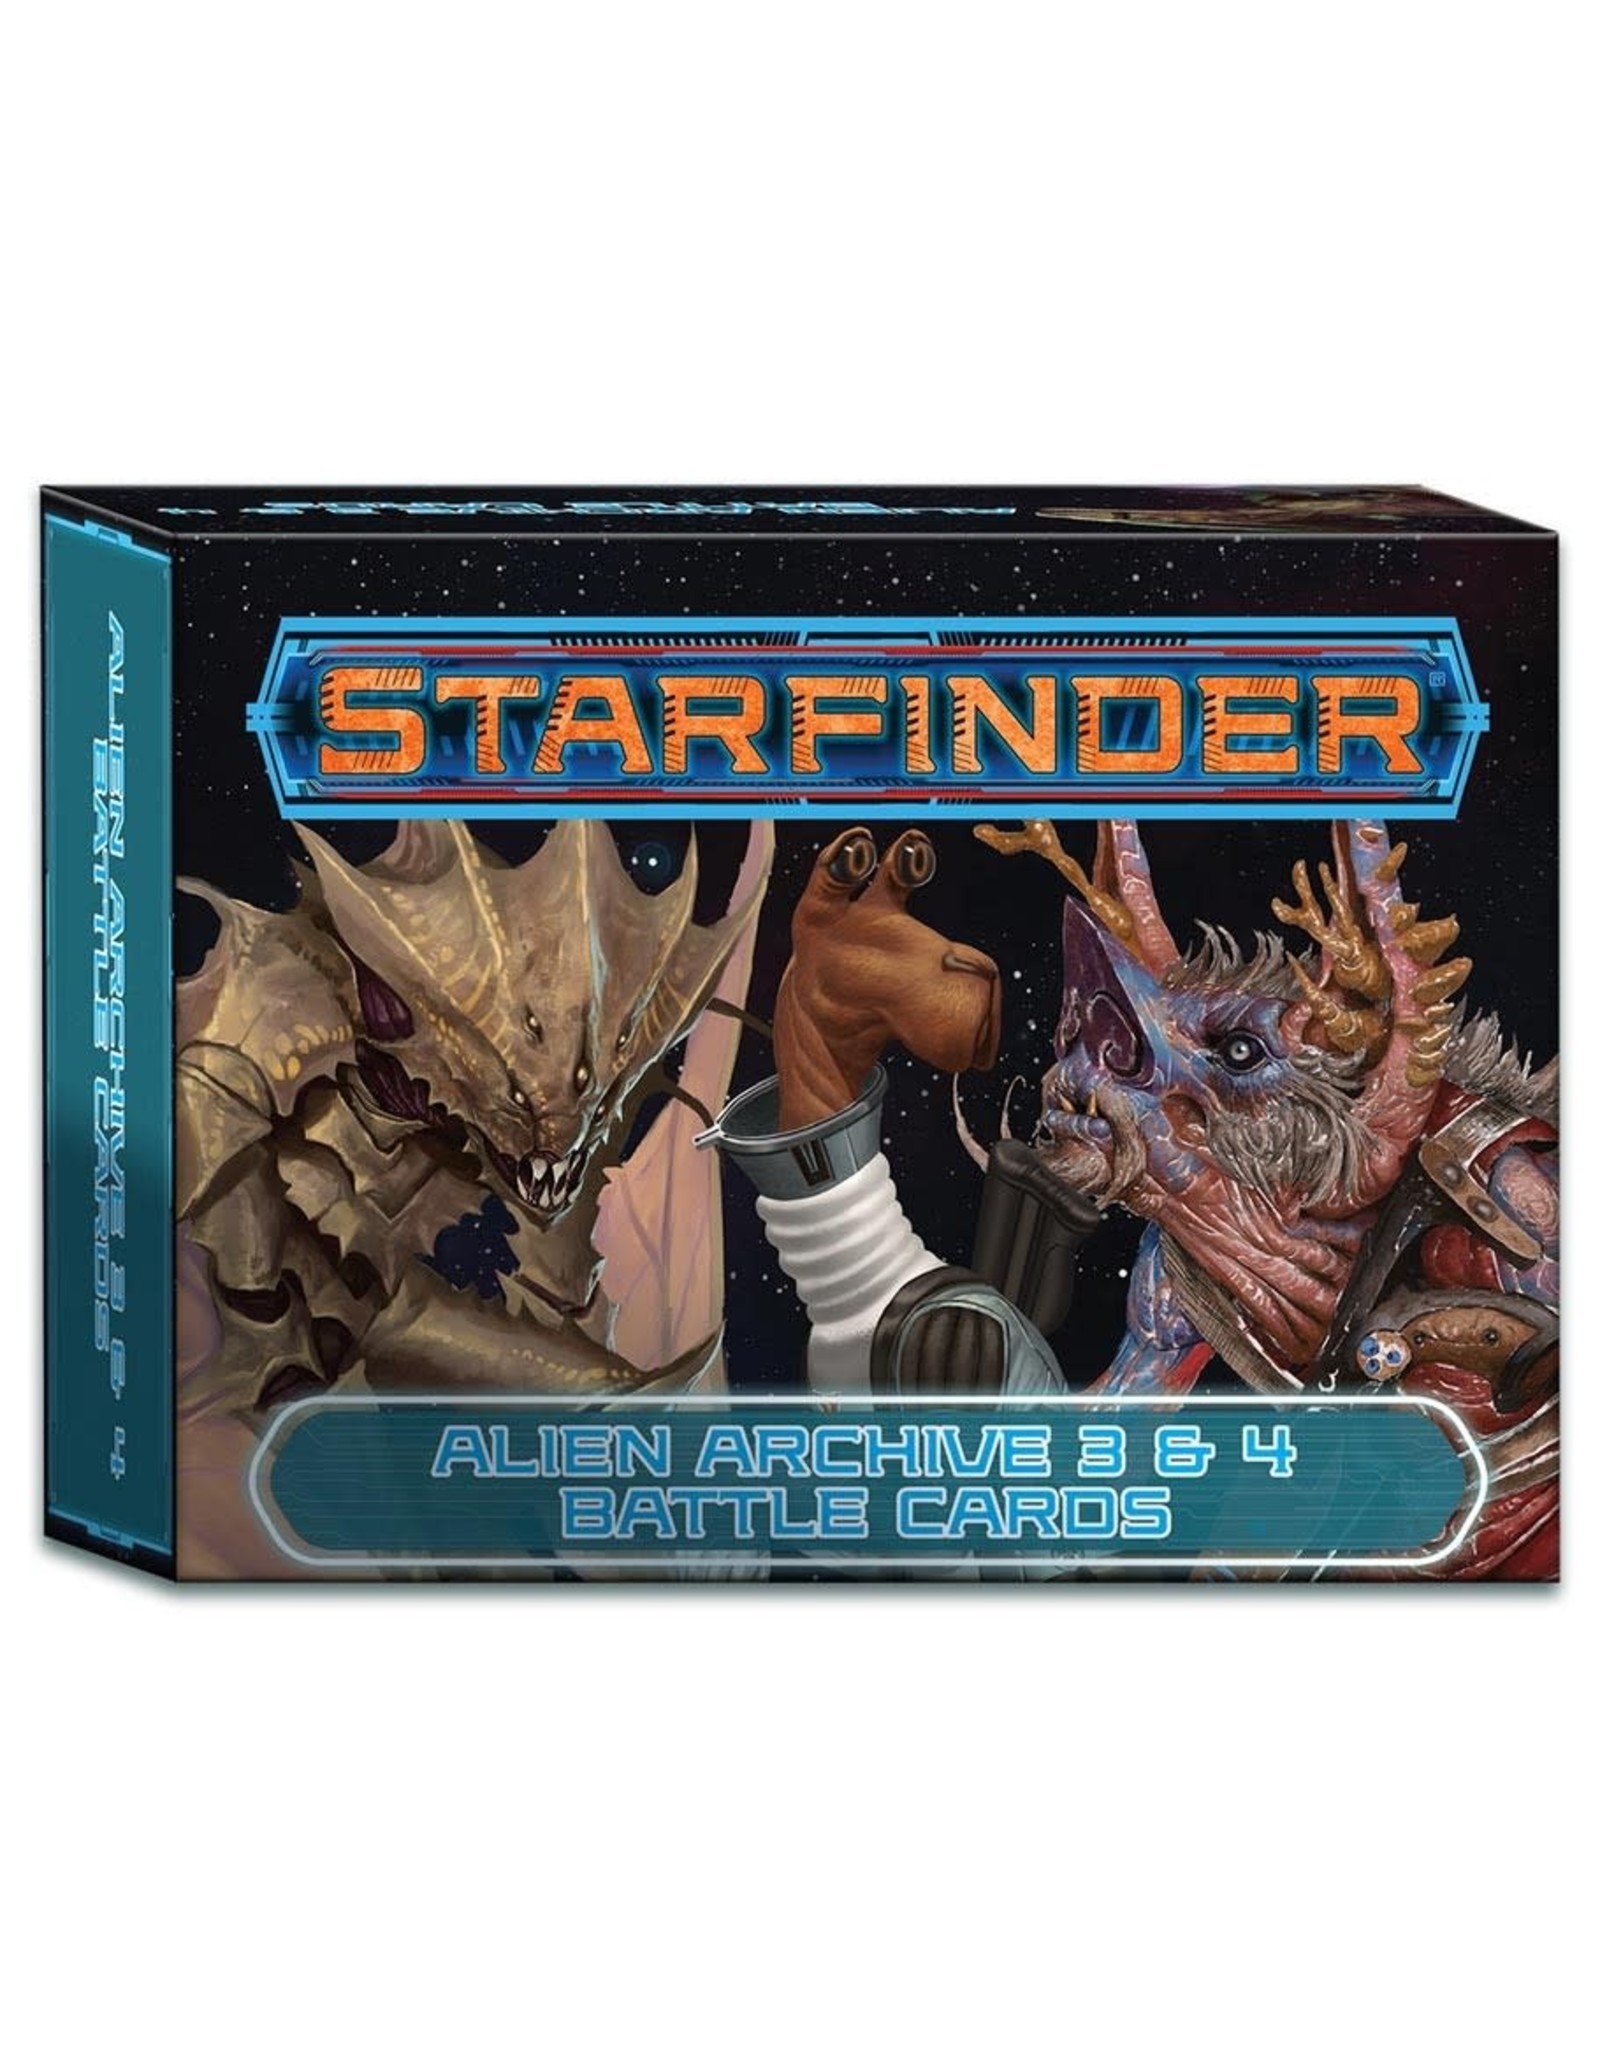 Paizo Starfinder RPG: Alien Archive 3 & 4 Battle Cards